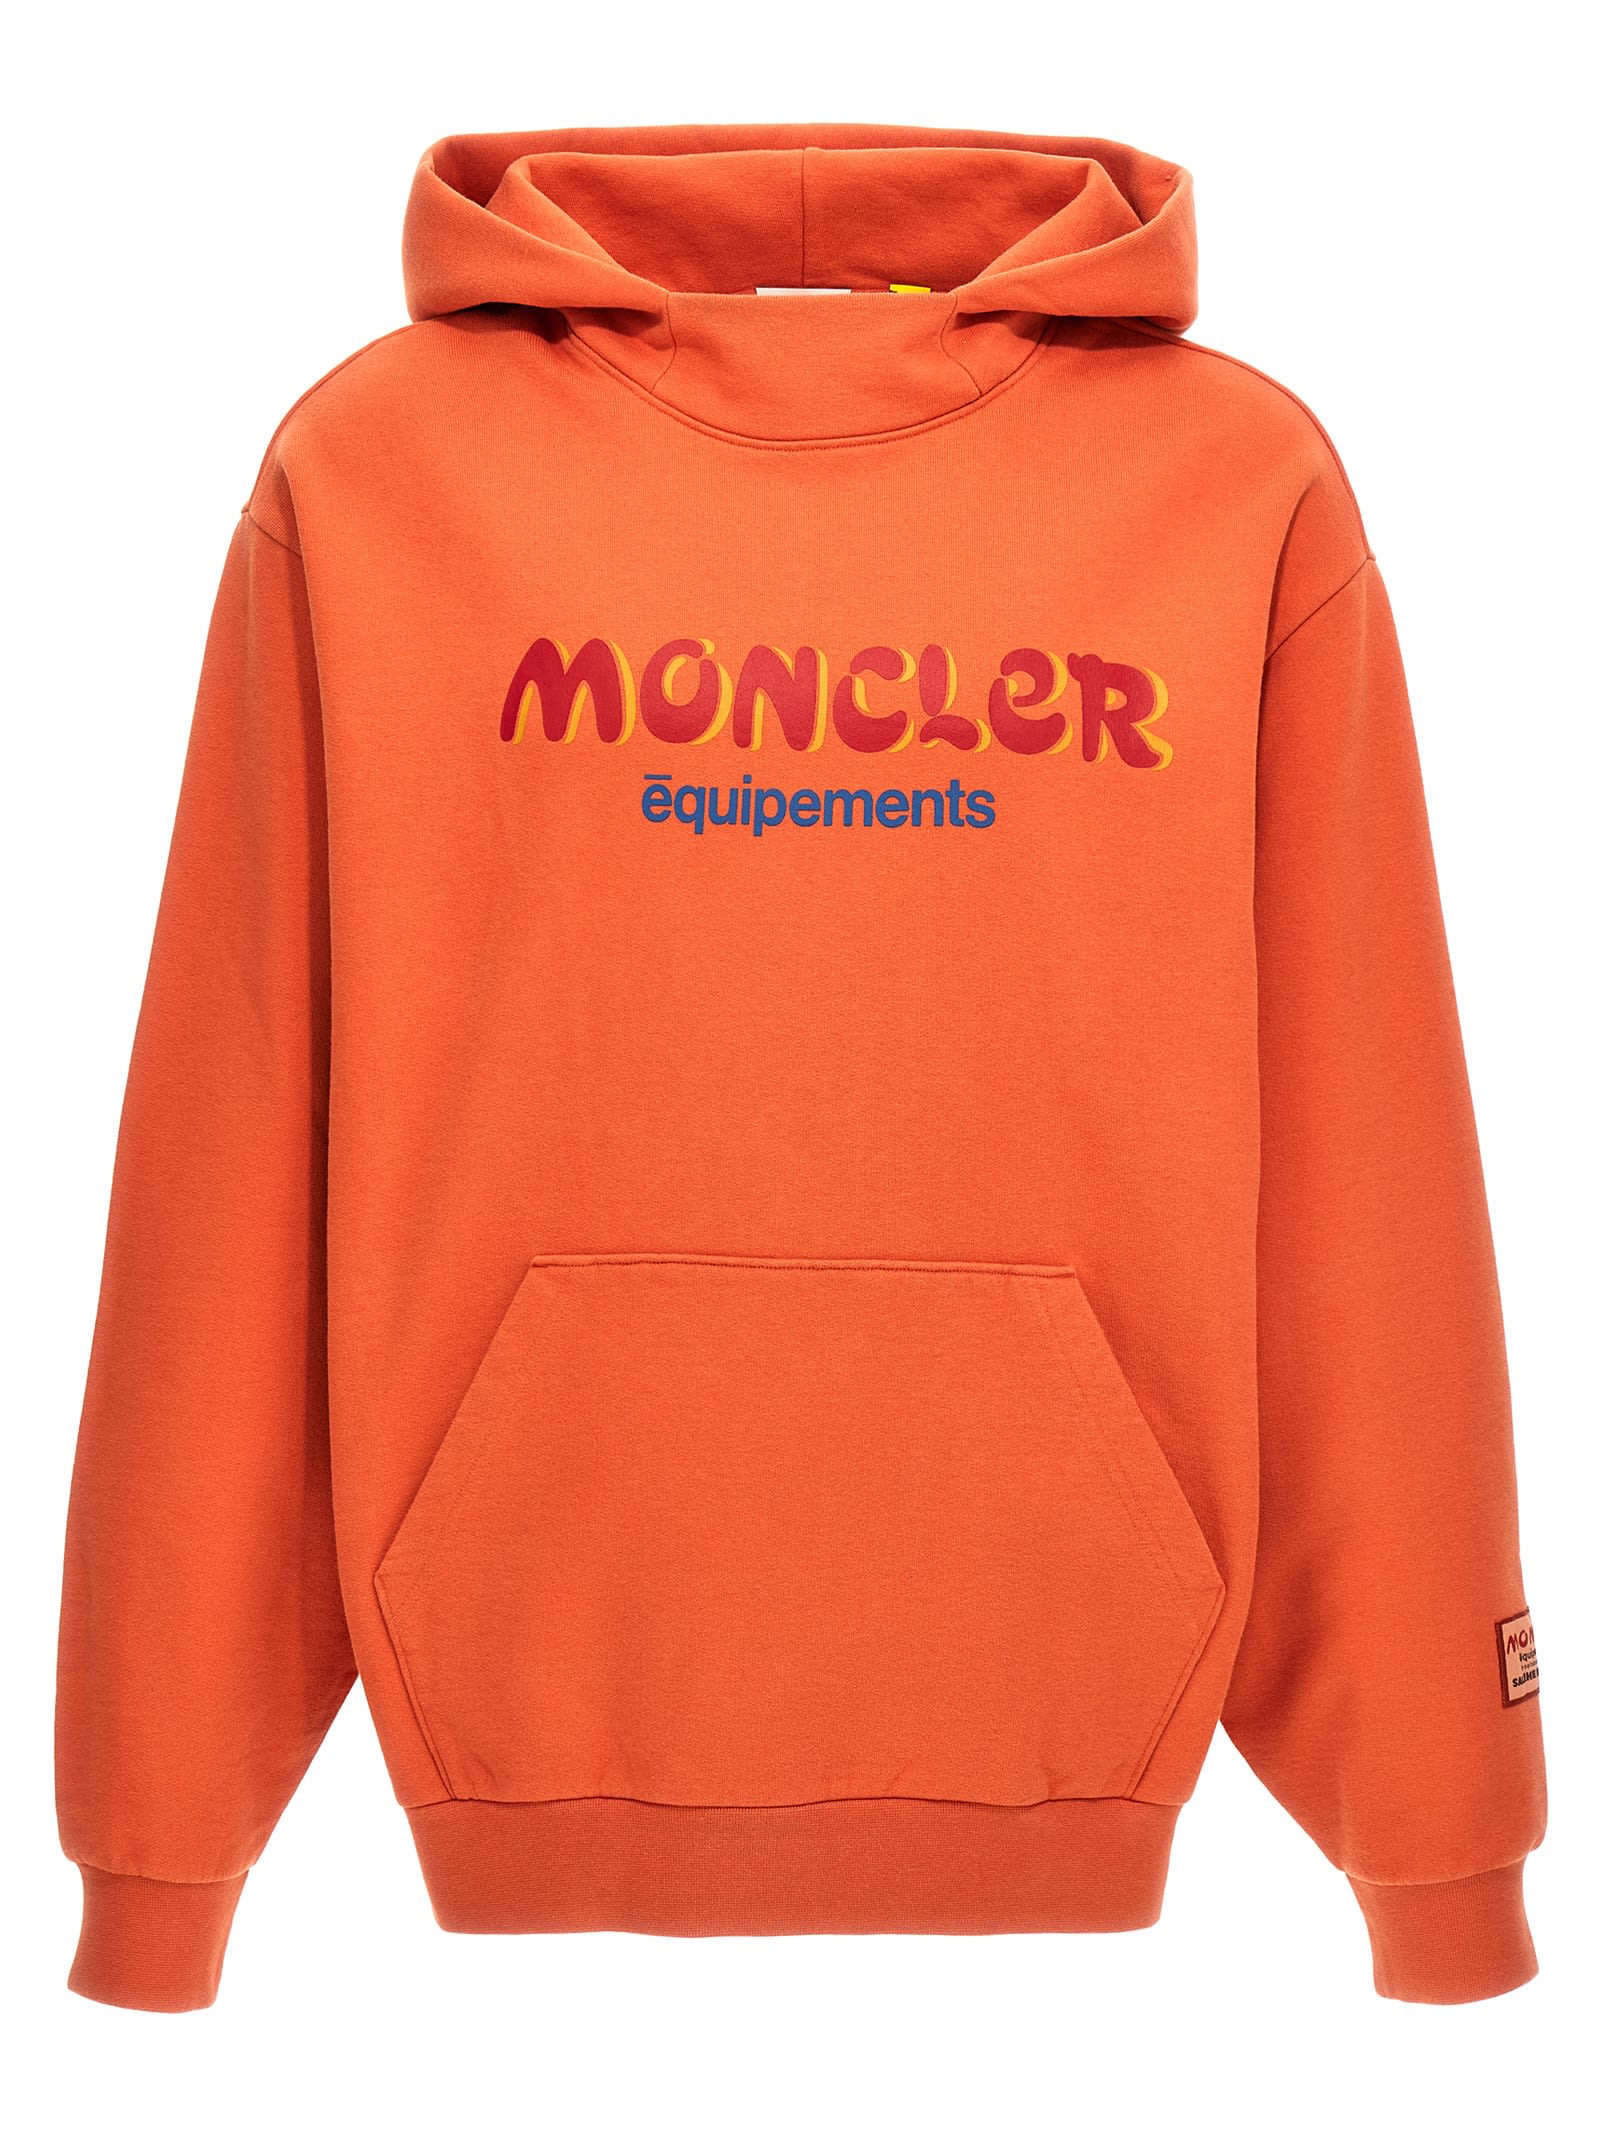 Shop Moncler Genius Salehe Bembury Hoodie In Orange